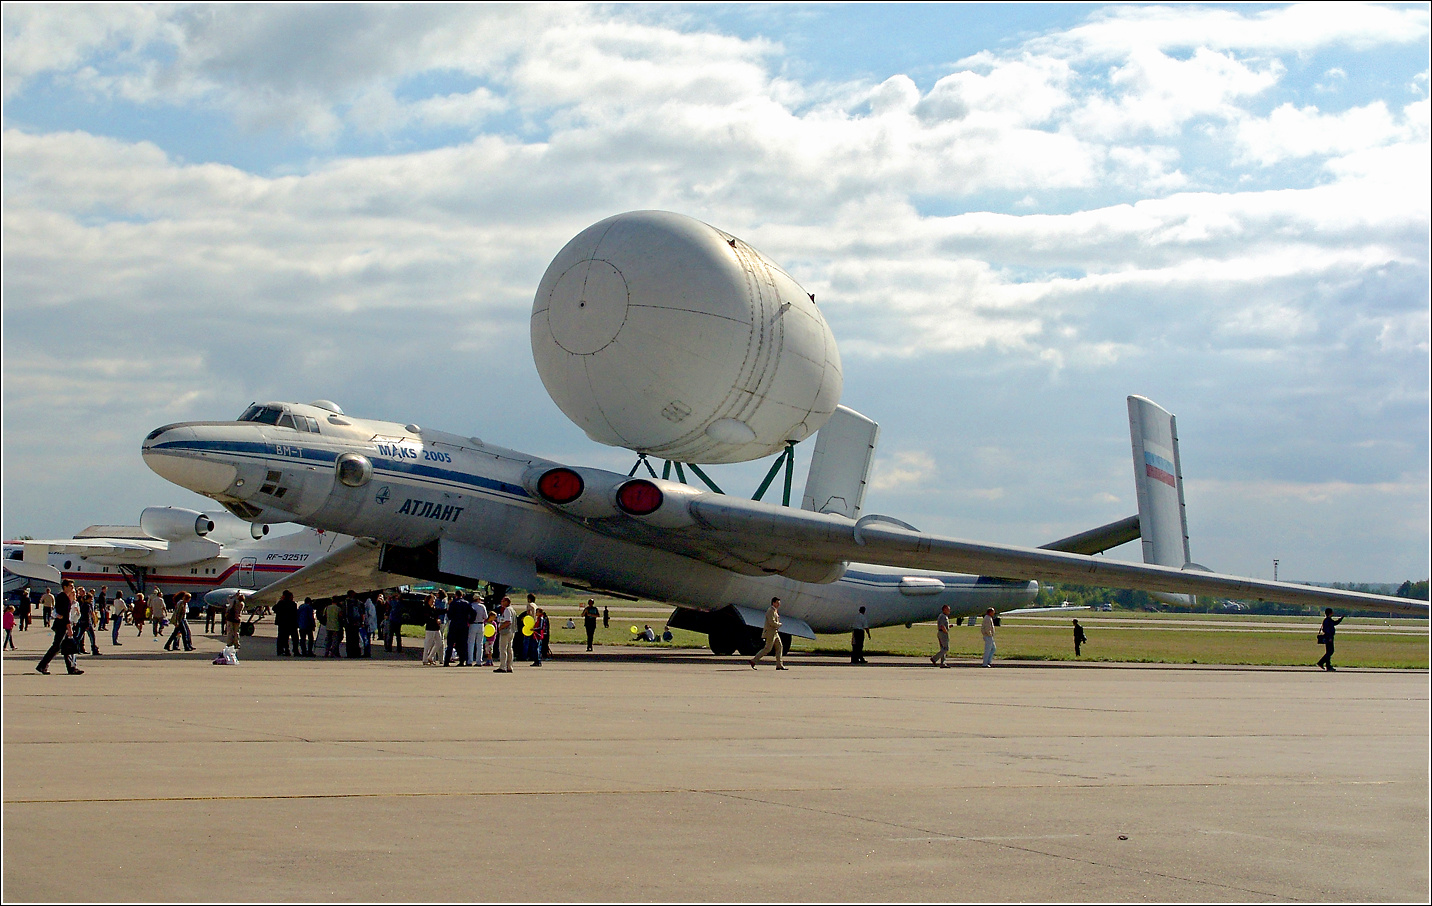 Атлант Атлант ВМ-т авиация самолет стоянка Жуковский МАКС-2005